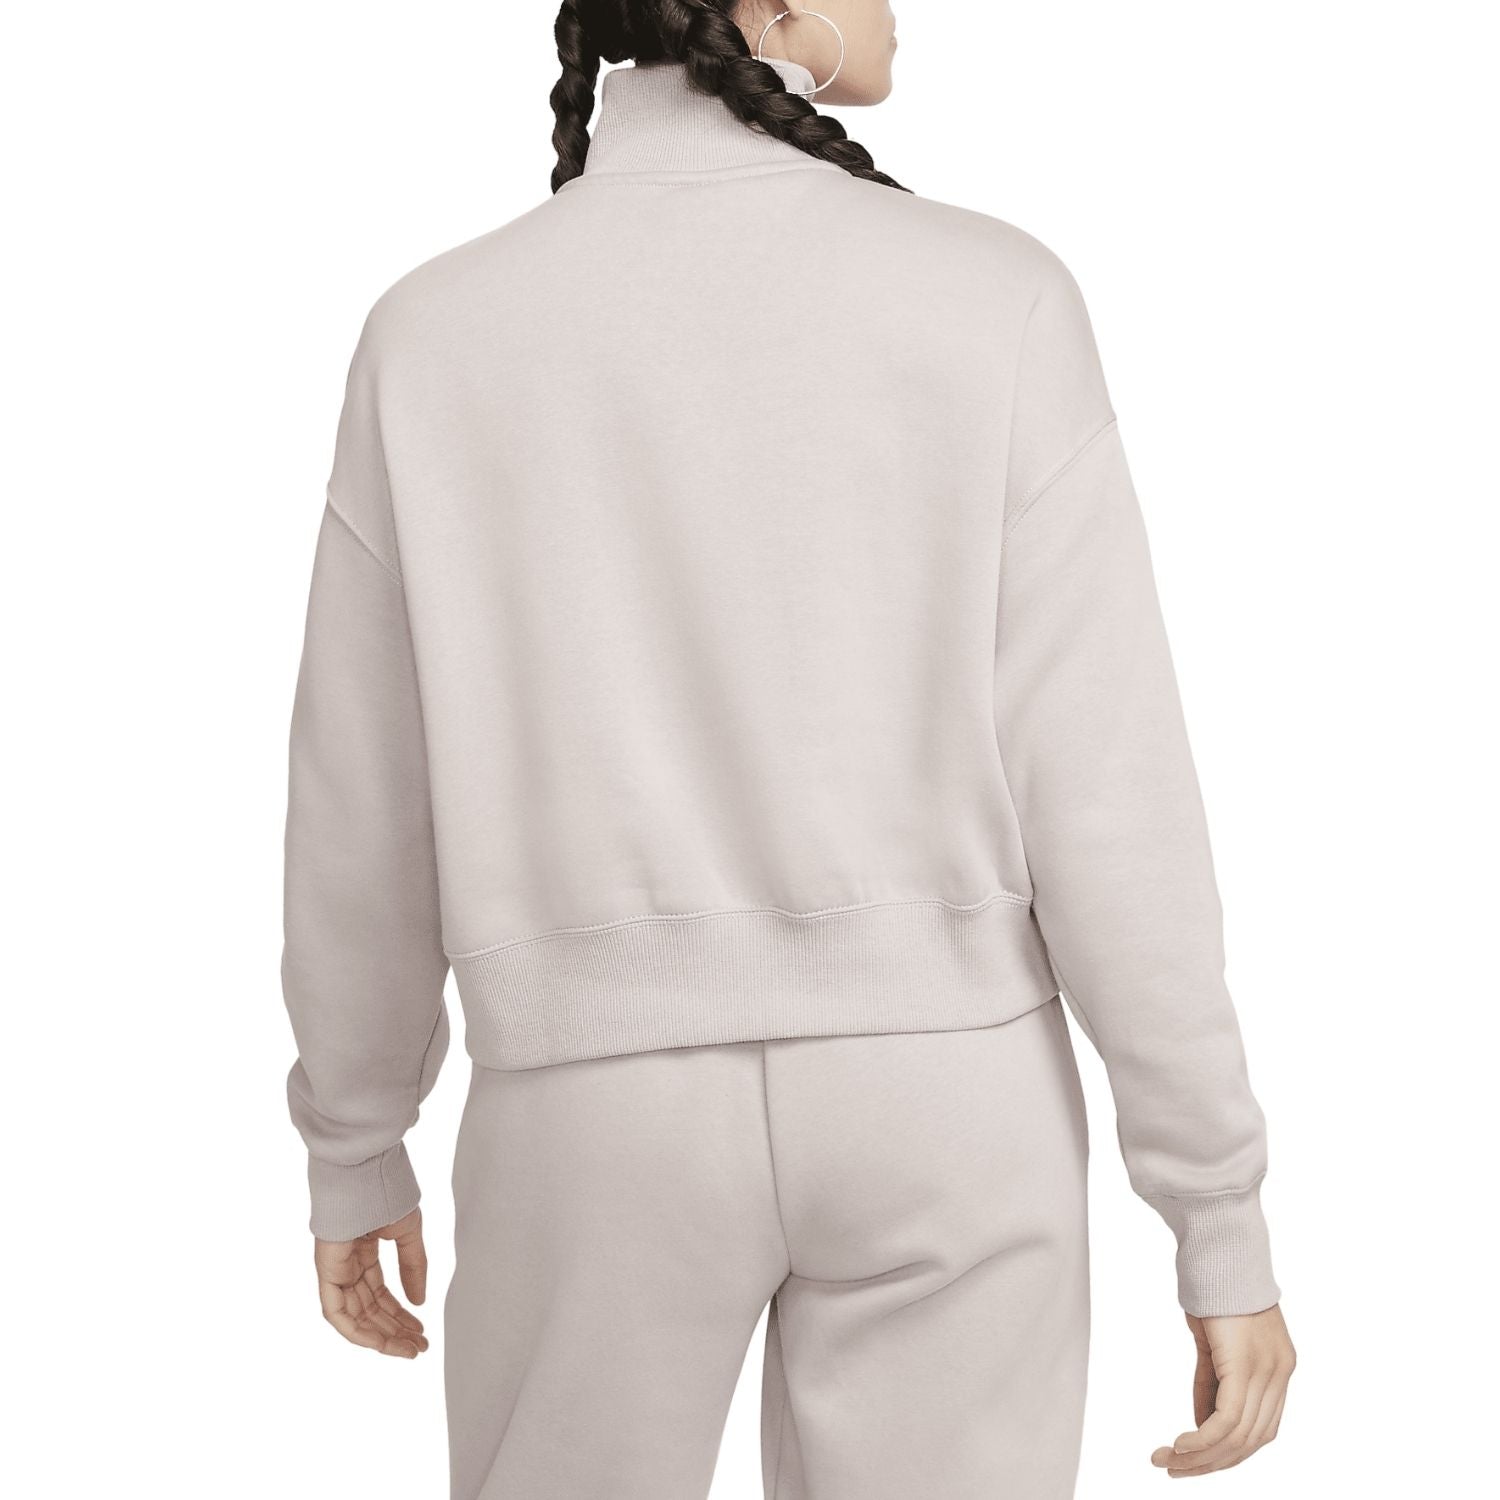 Nike Sportswear Phoenix Fleece Oversized 1/2-zip Crop Sweatshirt Womens Style : Dq5767